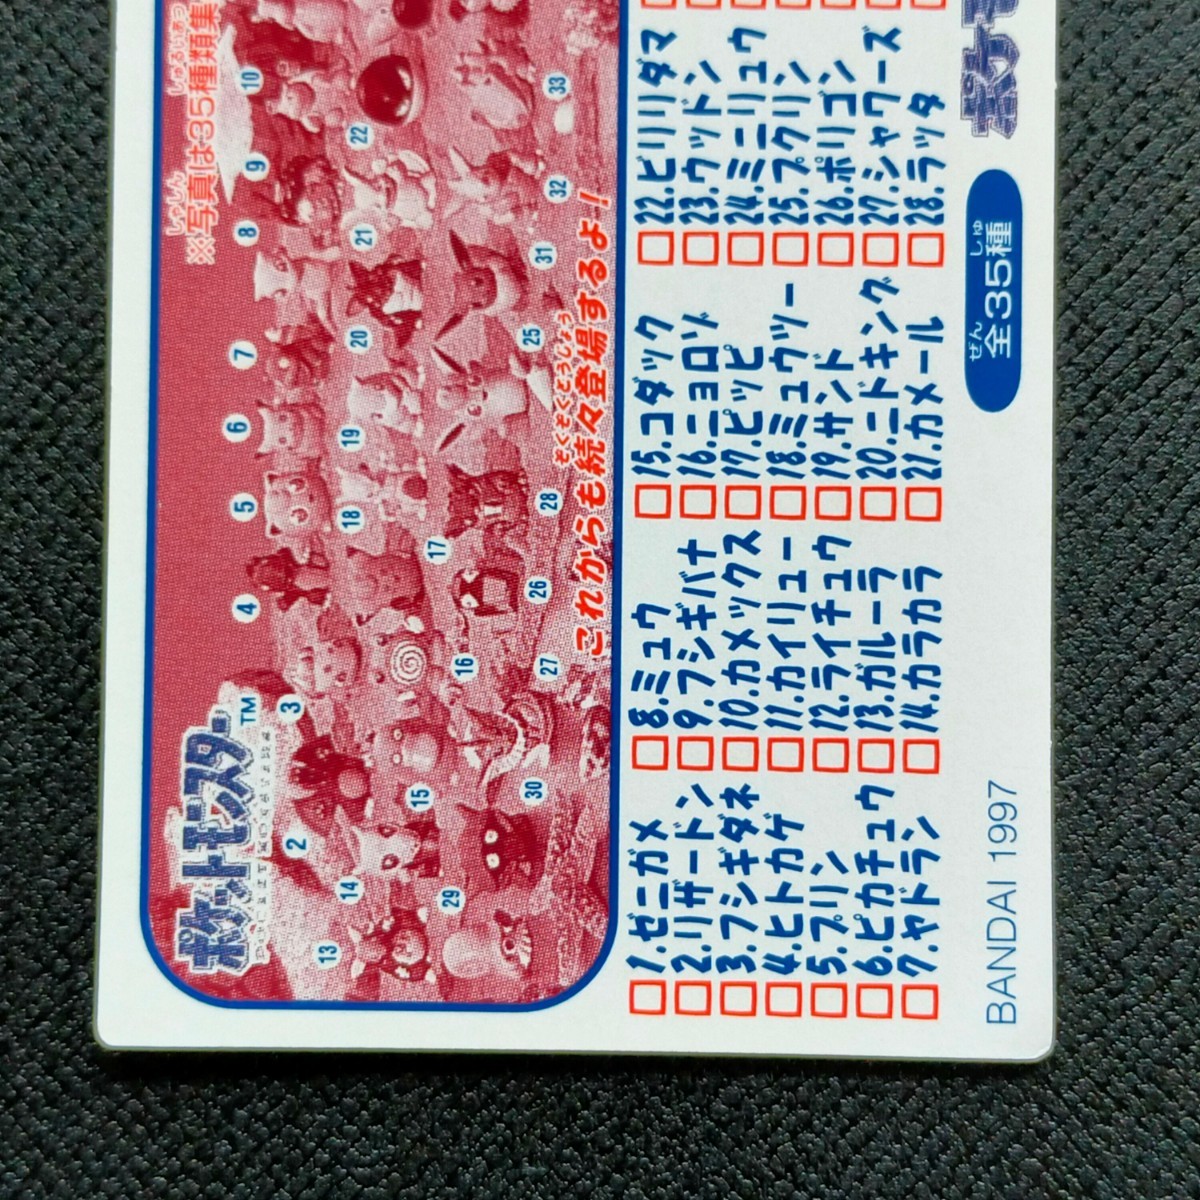 1995年初期 ナッシー ポケモン キッズ カード Nintendo 「ゼニガメ リザードン フシギダネ ヒトカゲ ピカチュウ ヤドラン ミュウ」_画像6